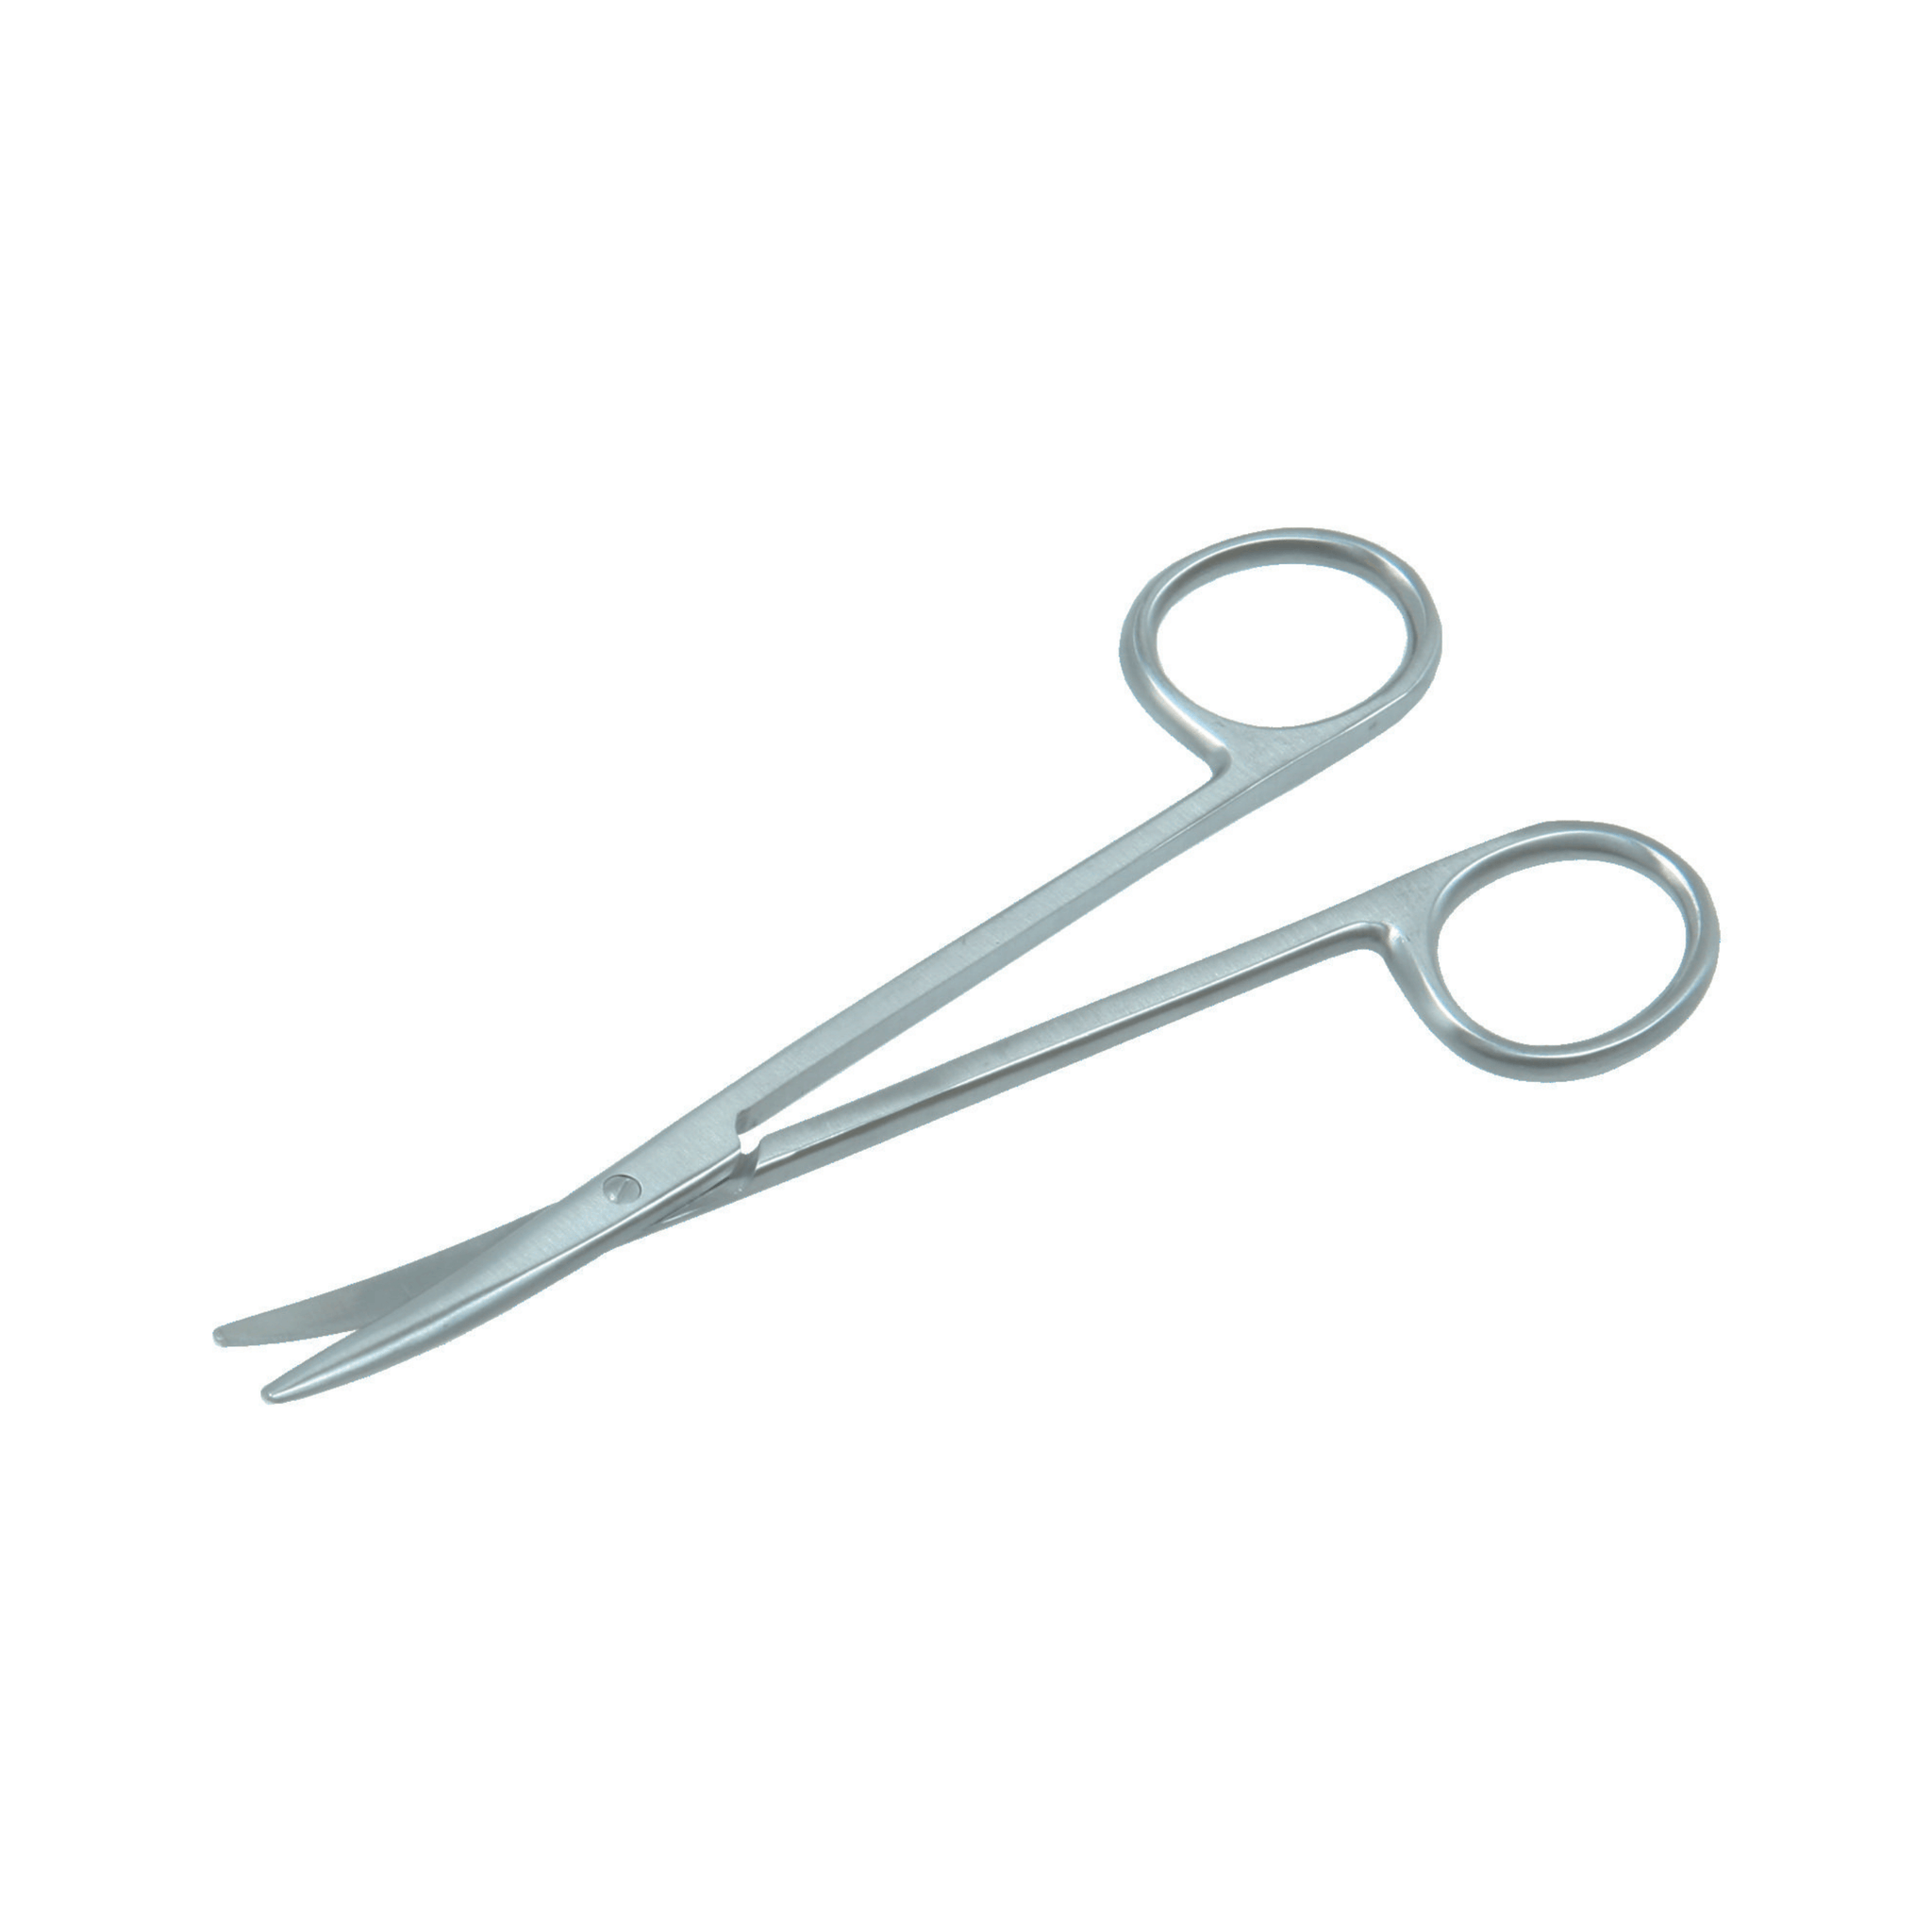 Metzenbaum Scissors- Curved, 14 cm - 2